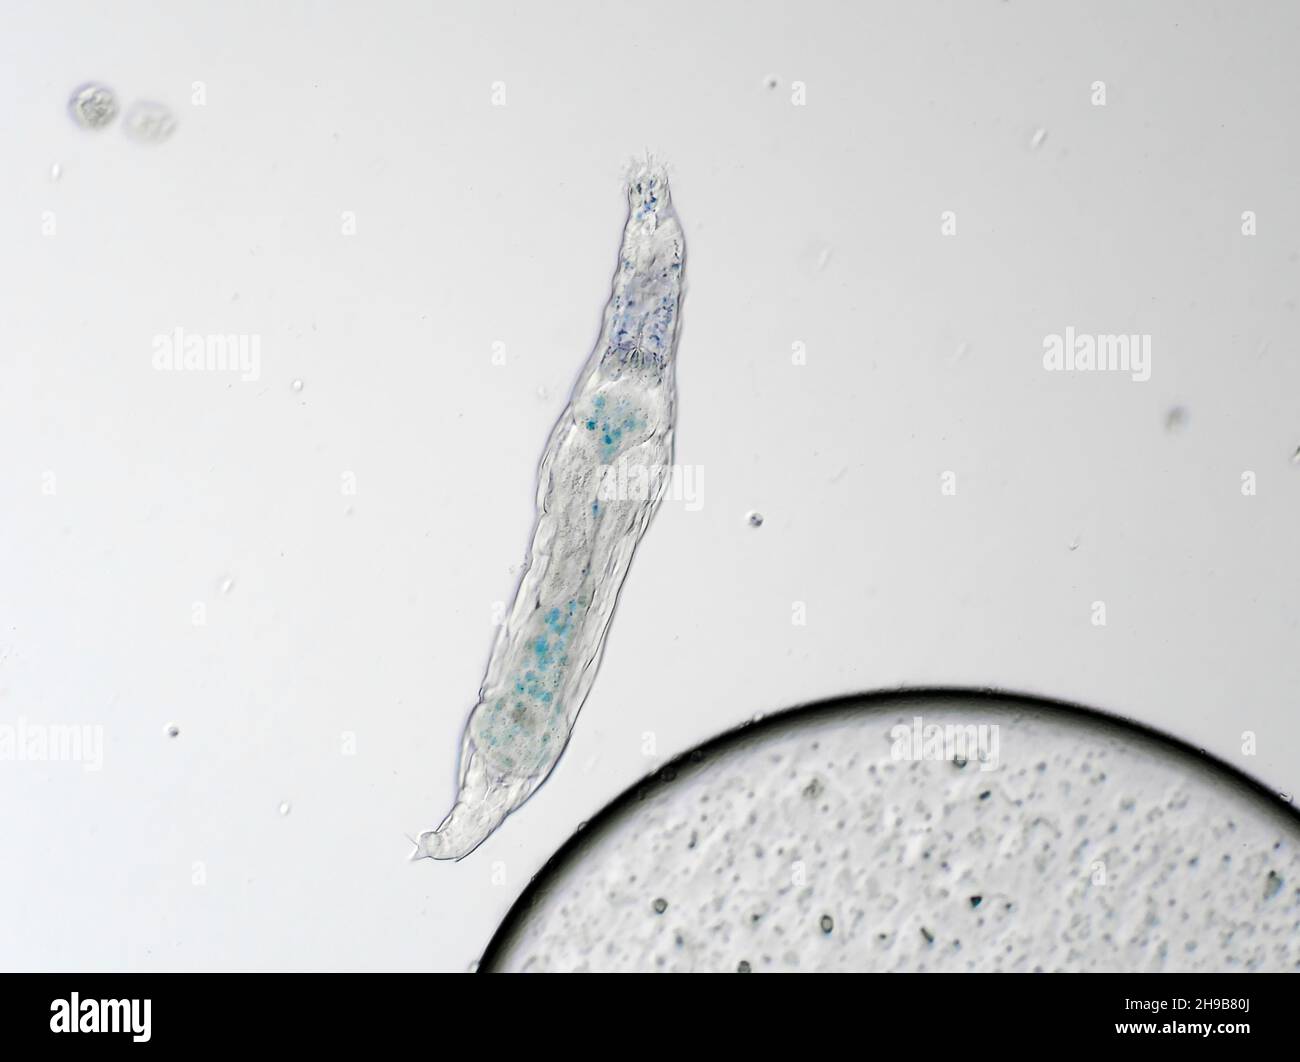 Bdelloid rotifer Desde una muestra de suelo, el campo de visión horizontal es de aproximadamente 0,55mm Foto de stock